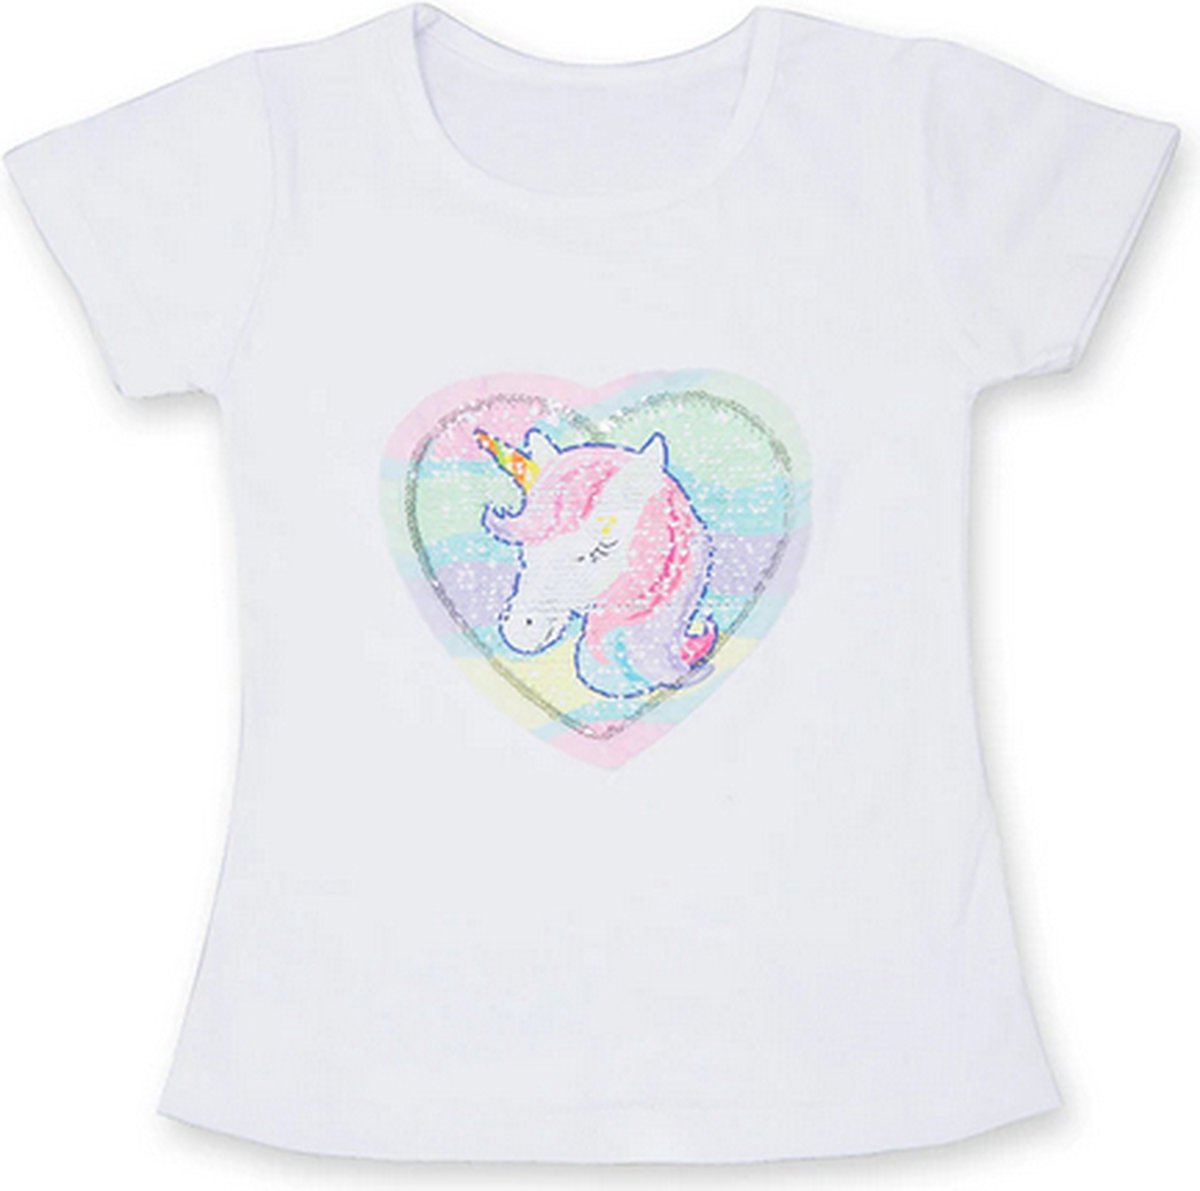 Eenhoorn tshirt meisje - pailletten eenhoorn shirt - Unicorn T-shirt pailletten - maat 122/128 / XL - meisjes eenhoorn shirt 6 - 7 jaar